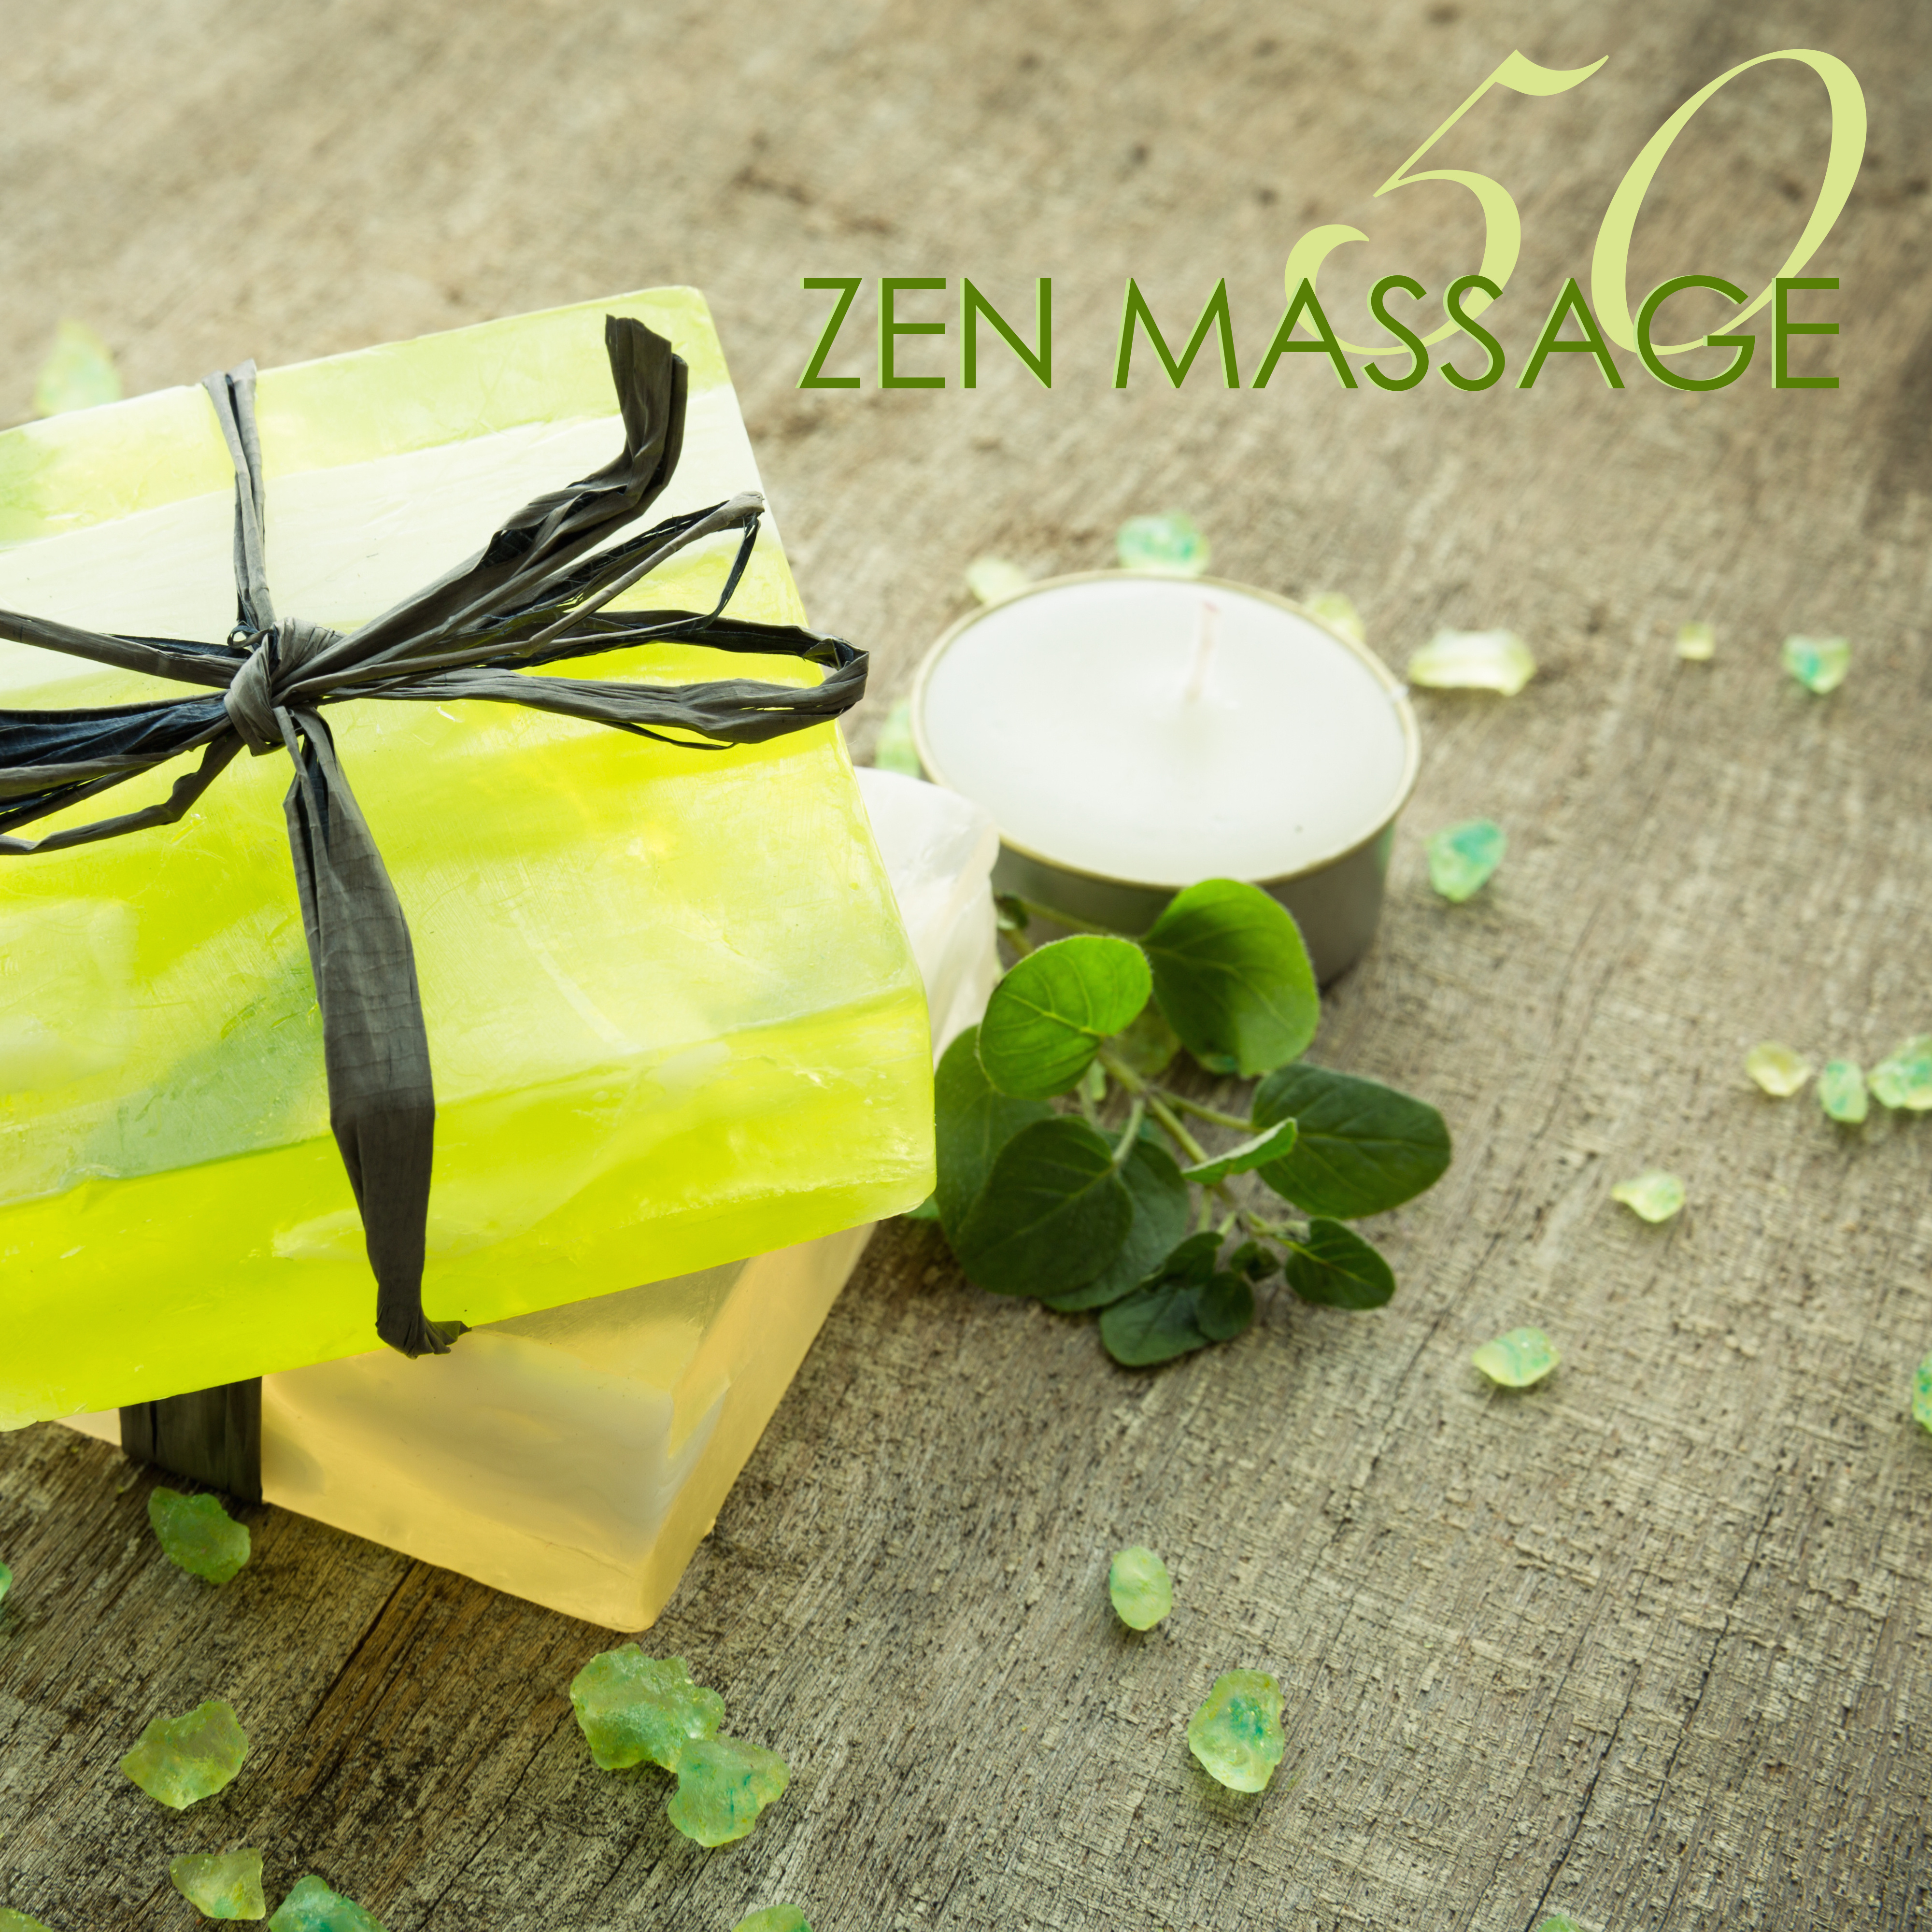 50 Zen Massage - Relaxing Spa Massage Music & Zen Meditation Songs